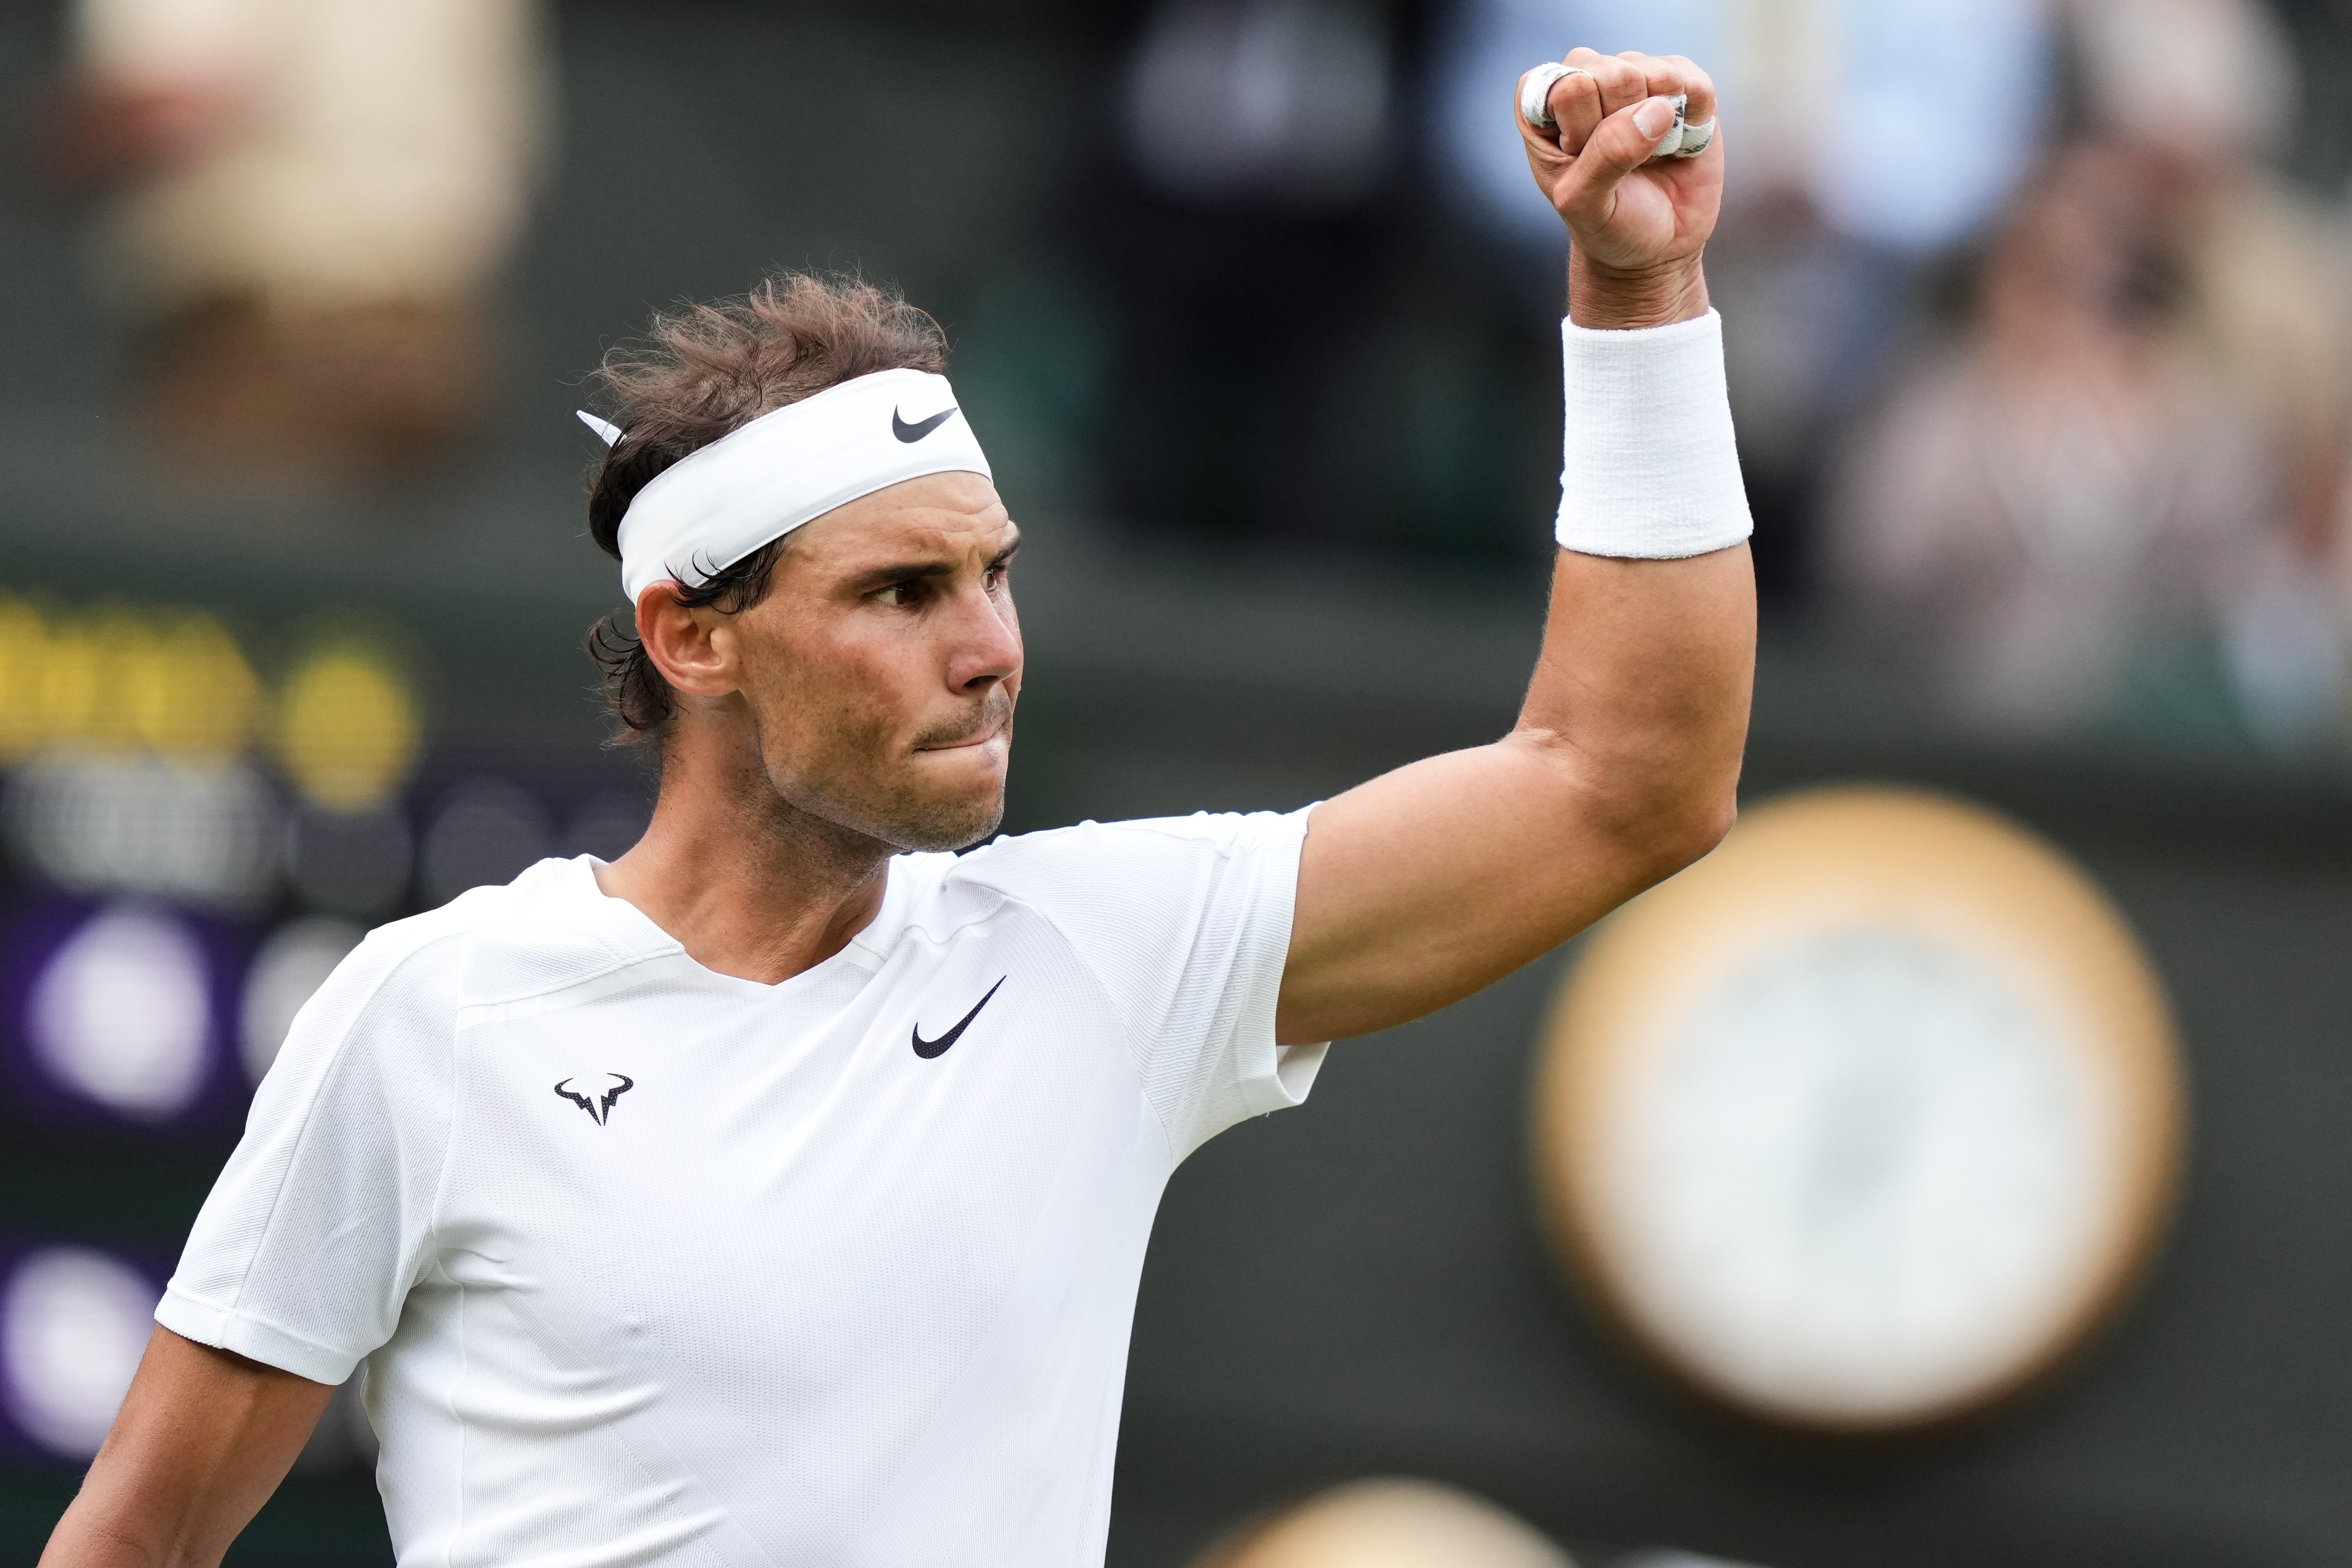 When is Rafael Nadals next match at Wimbledon?